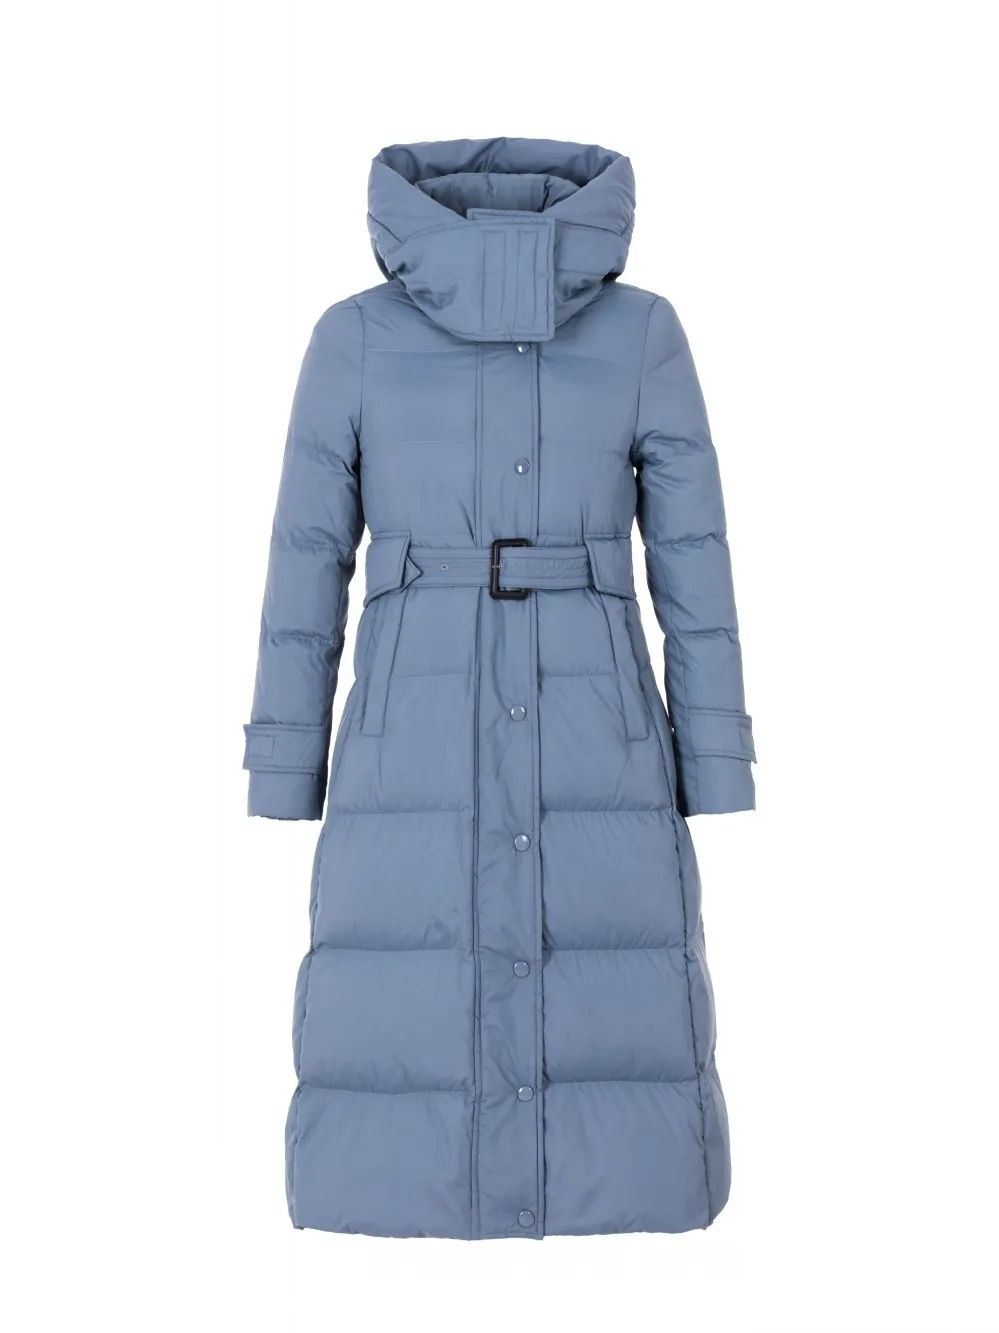 Inverno moda novo jaqueta com capuz engrossar tamanho grande azul preto branco mulheres para baixo casaco 200923